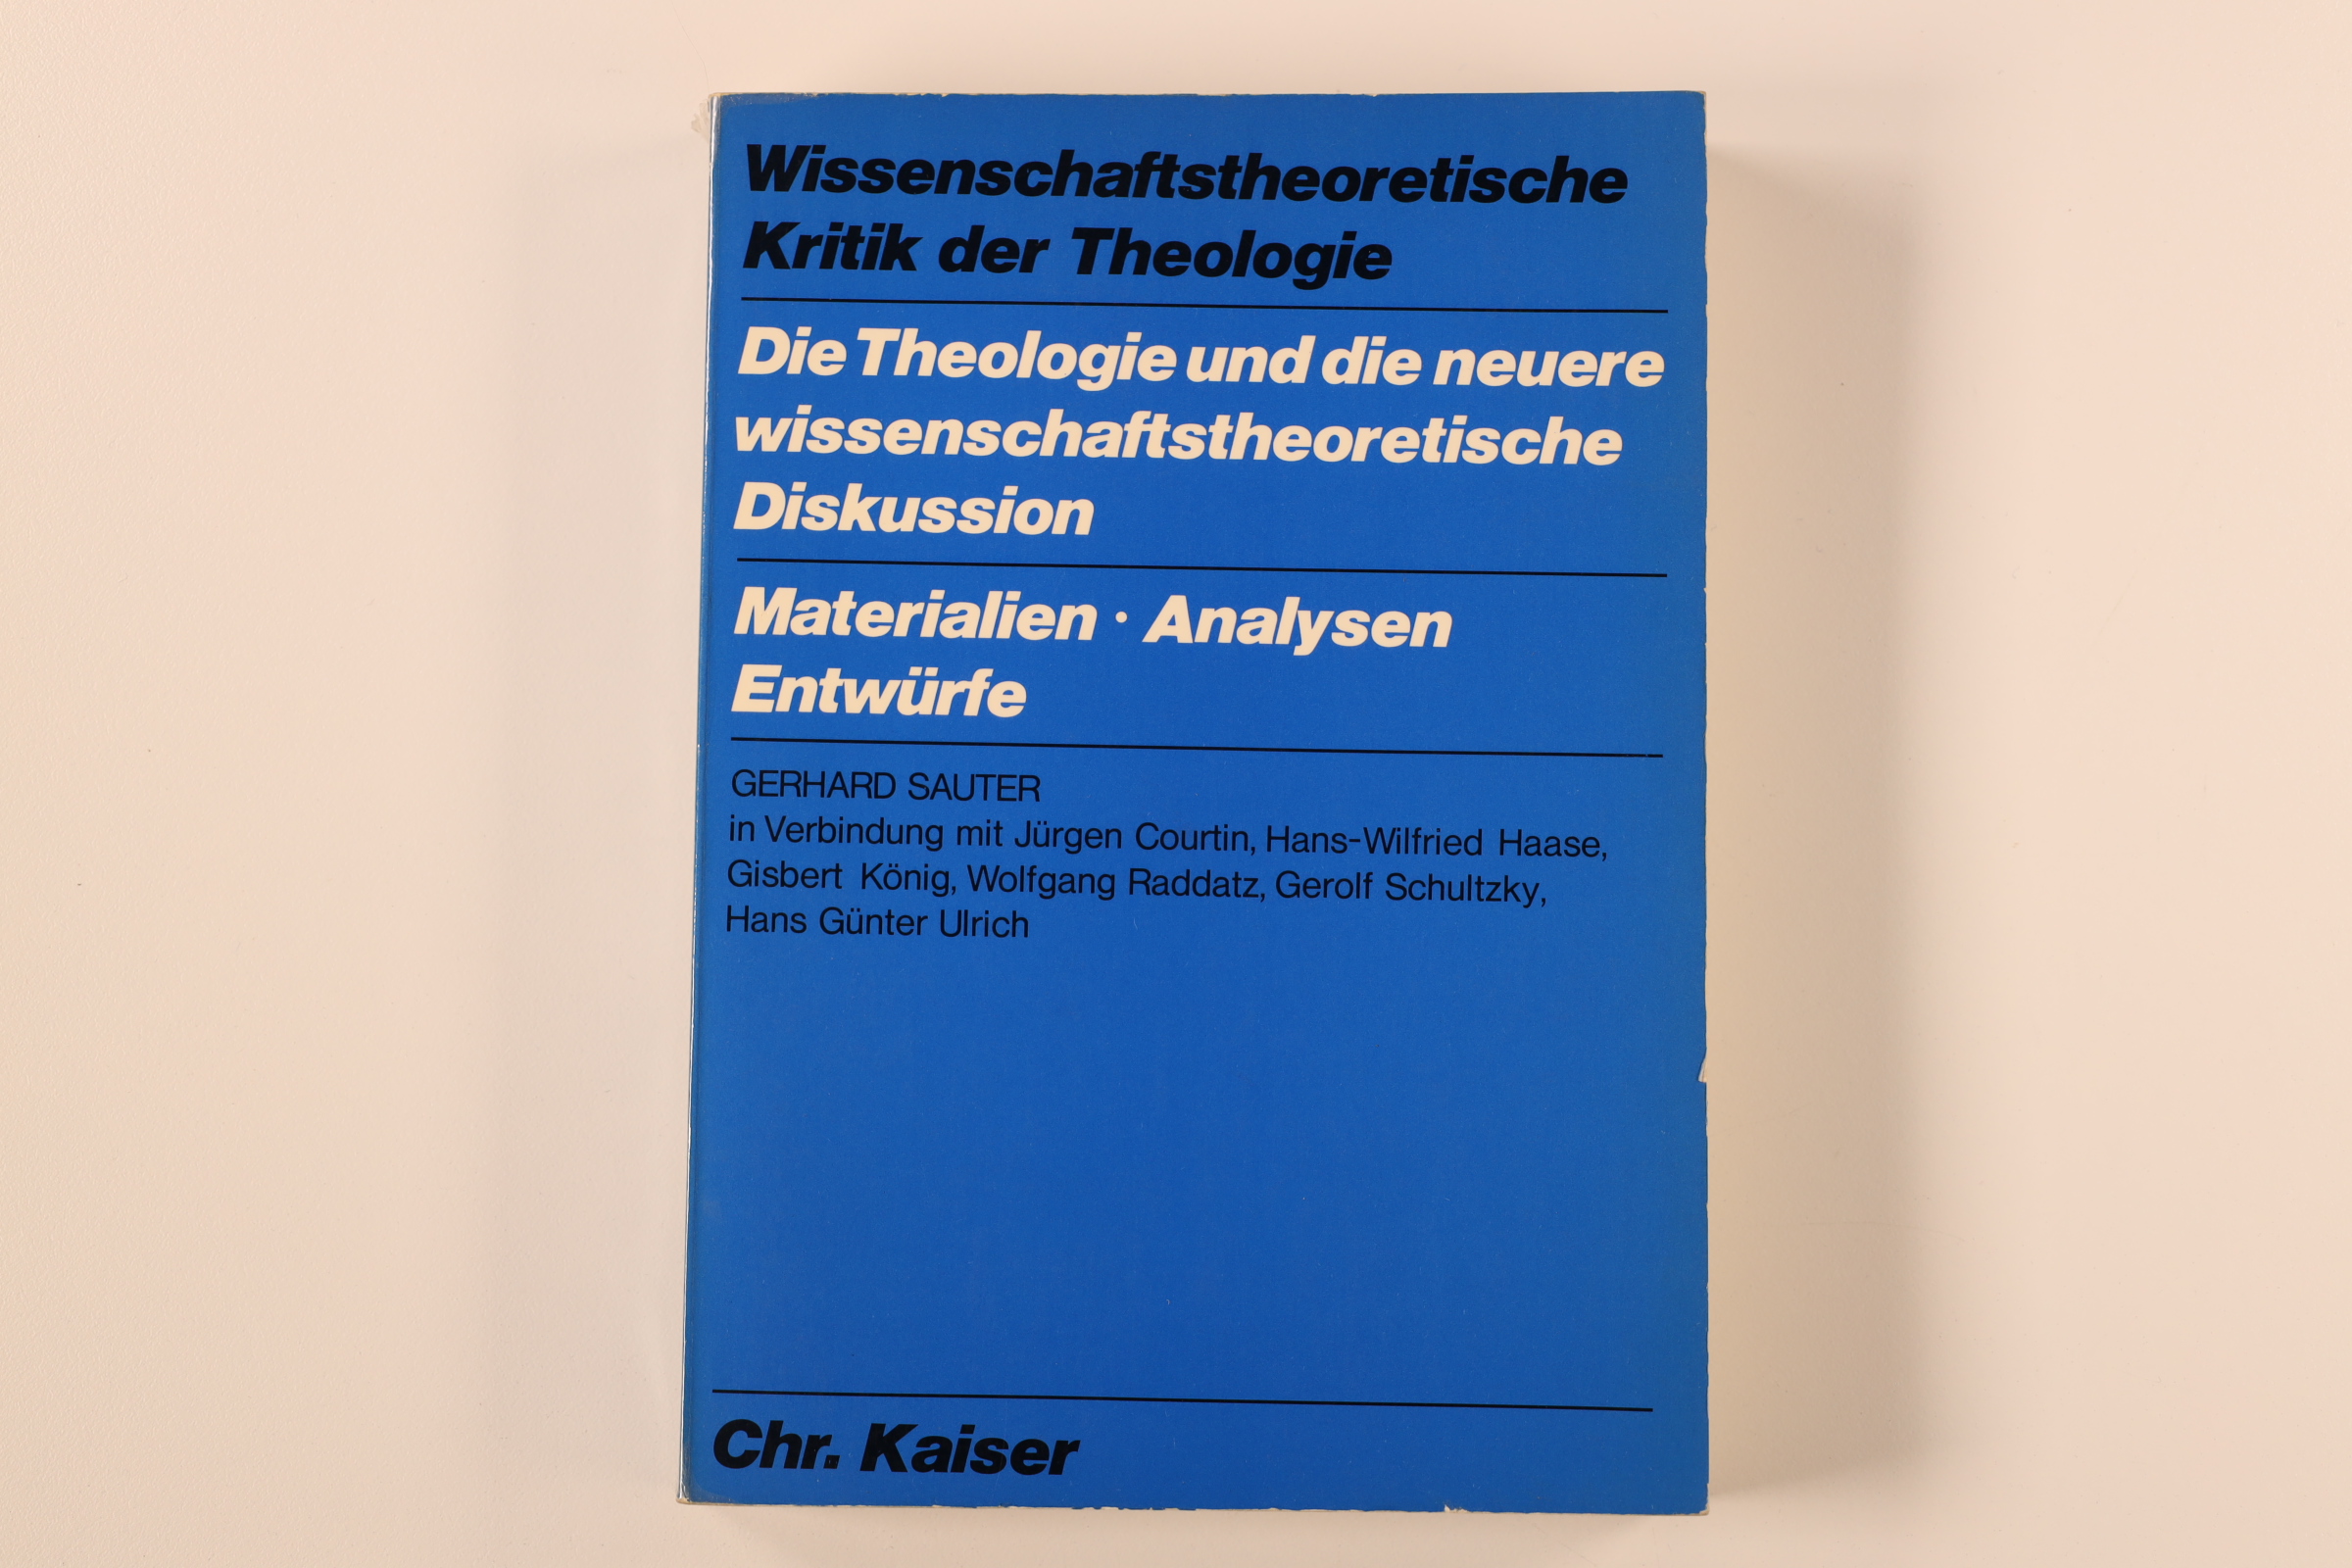 WISSENSCHAFTSTHEORETISCHE KRITIK DER THEOLOGIE. Die Theologie und die neuere wissenschaftstheoretische Diskussion - Sauter, Gerhard